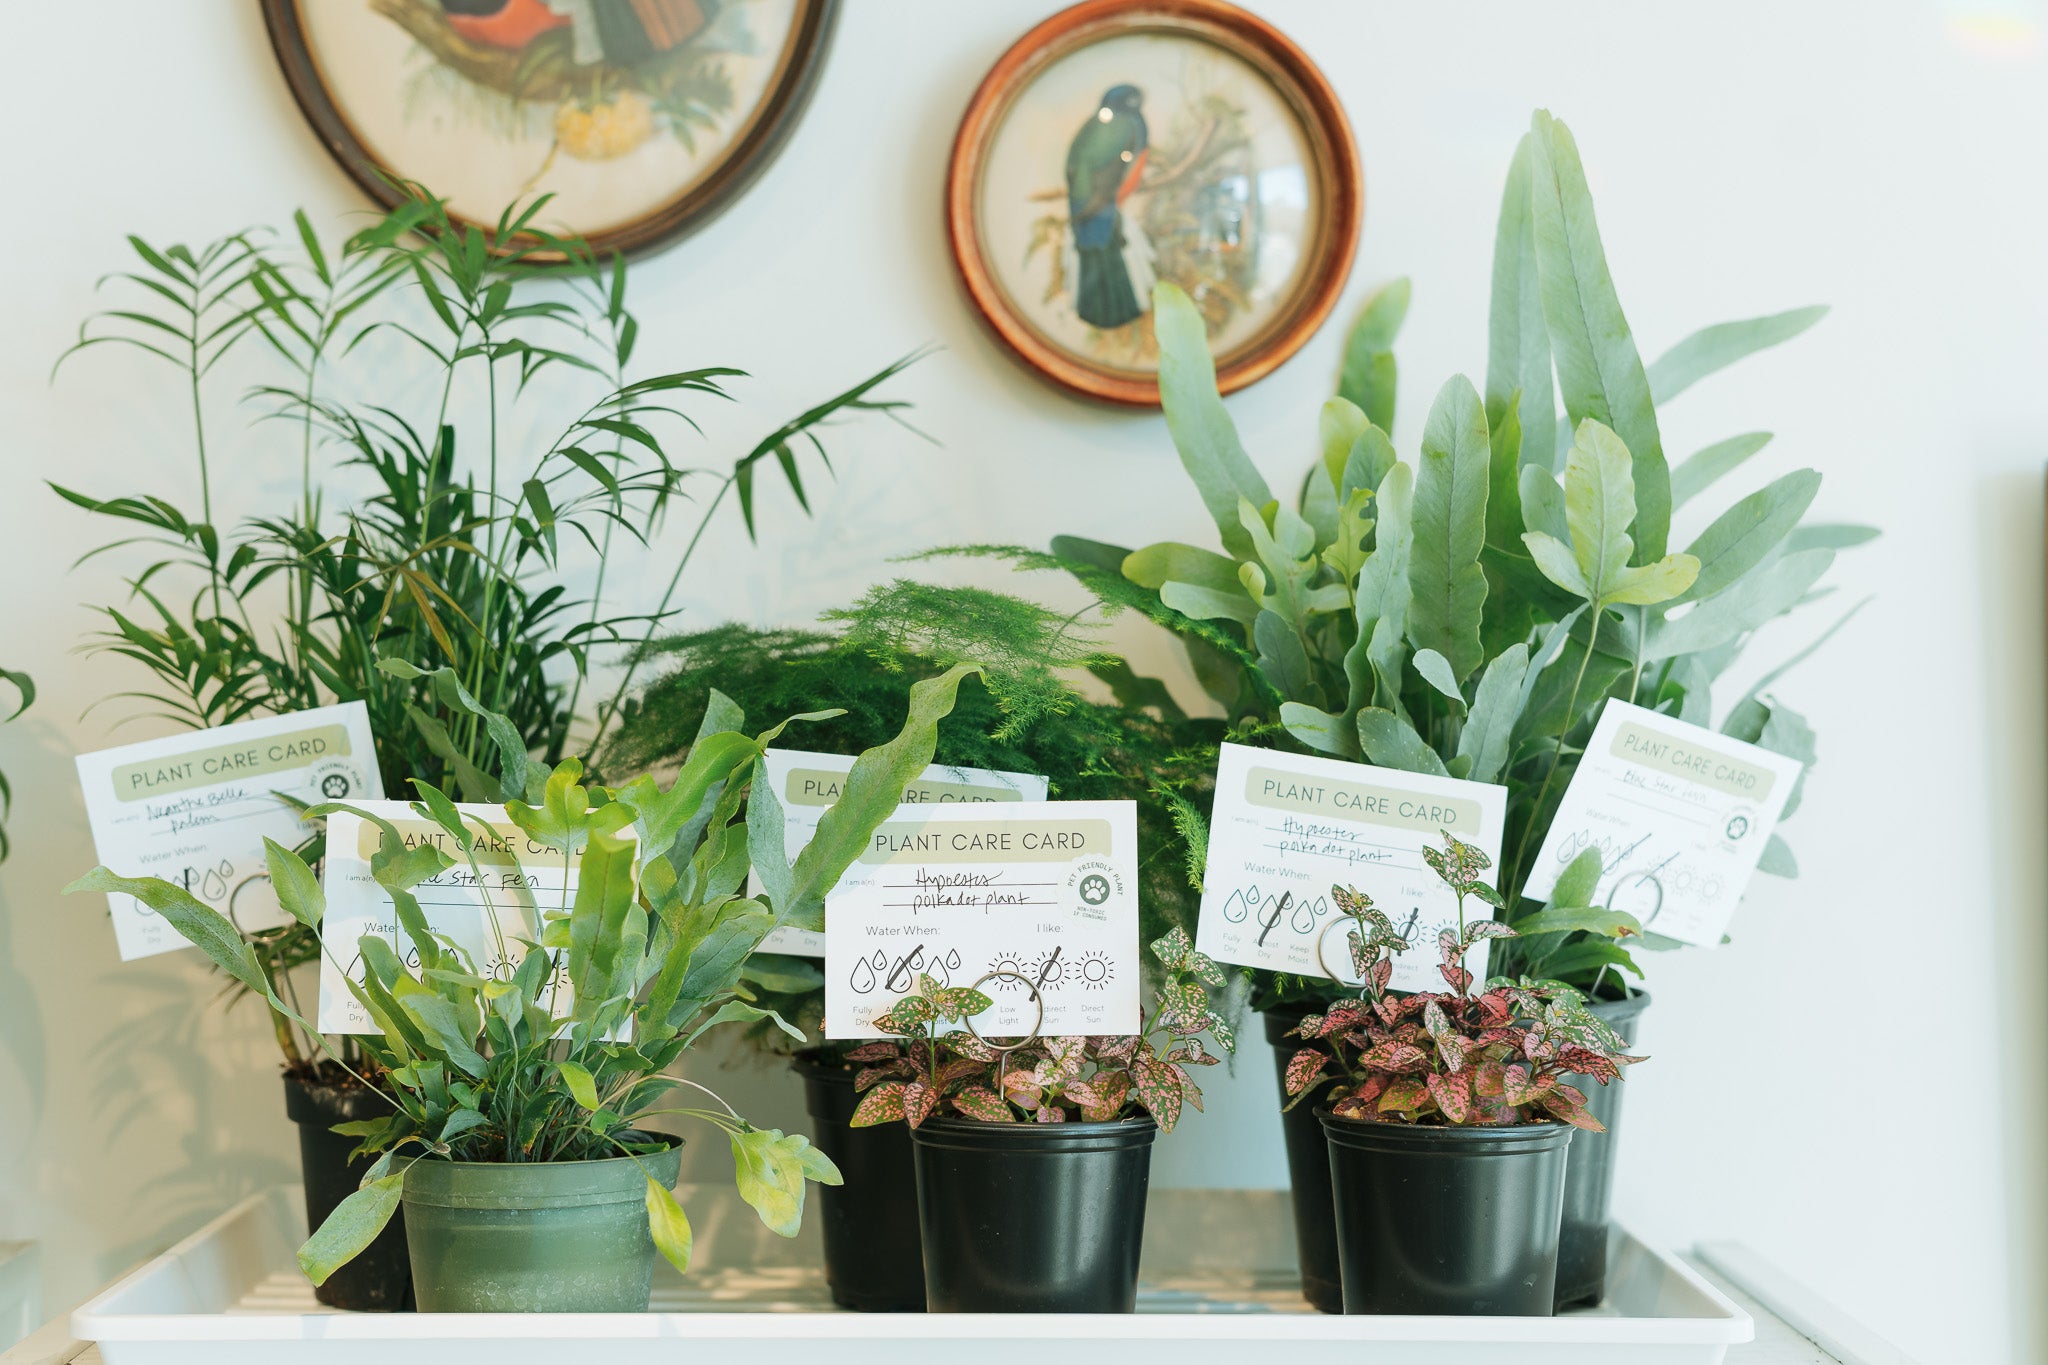 4" indoor house plants